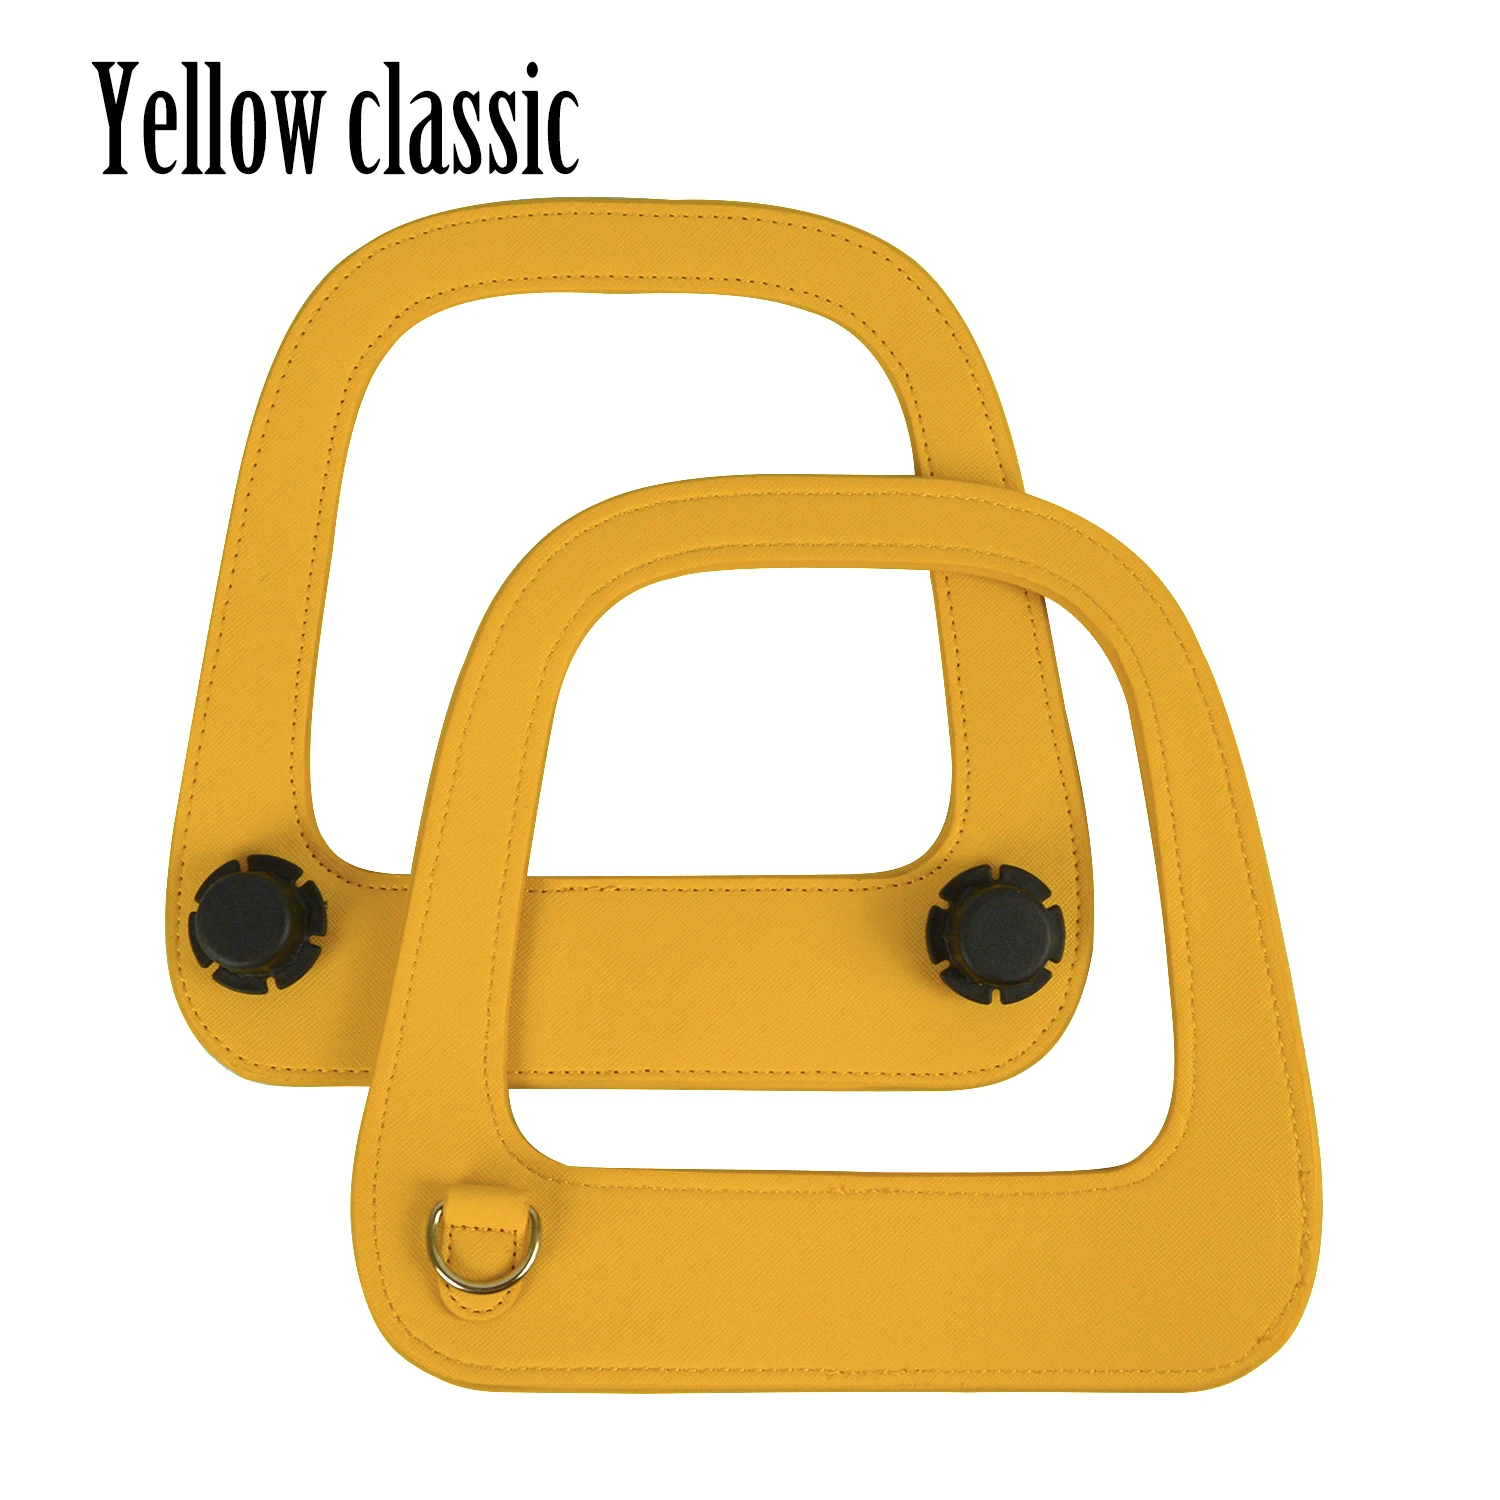 Tanqu Новая Большая продолговатая ручка из искусственной кожи с серебряной d-образной пряжкой для стандартной классической сумки Obag - Цвет: Yellow Classic